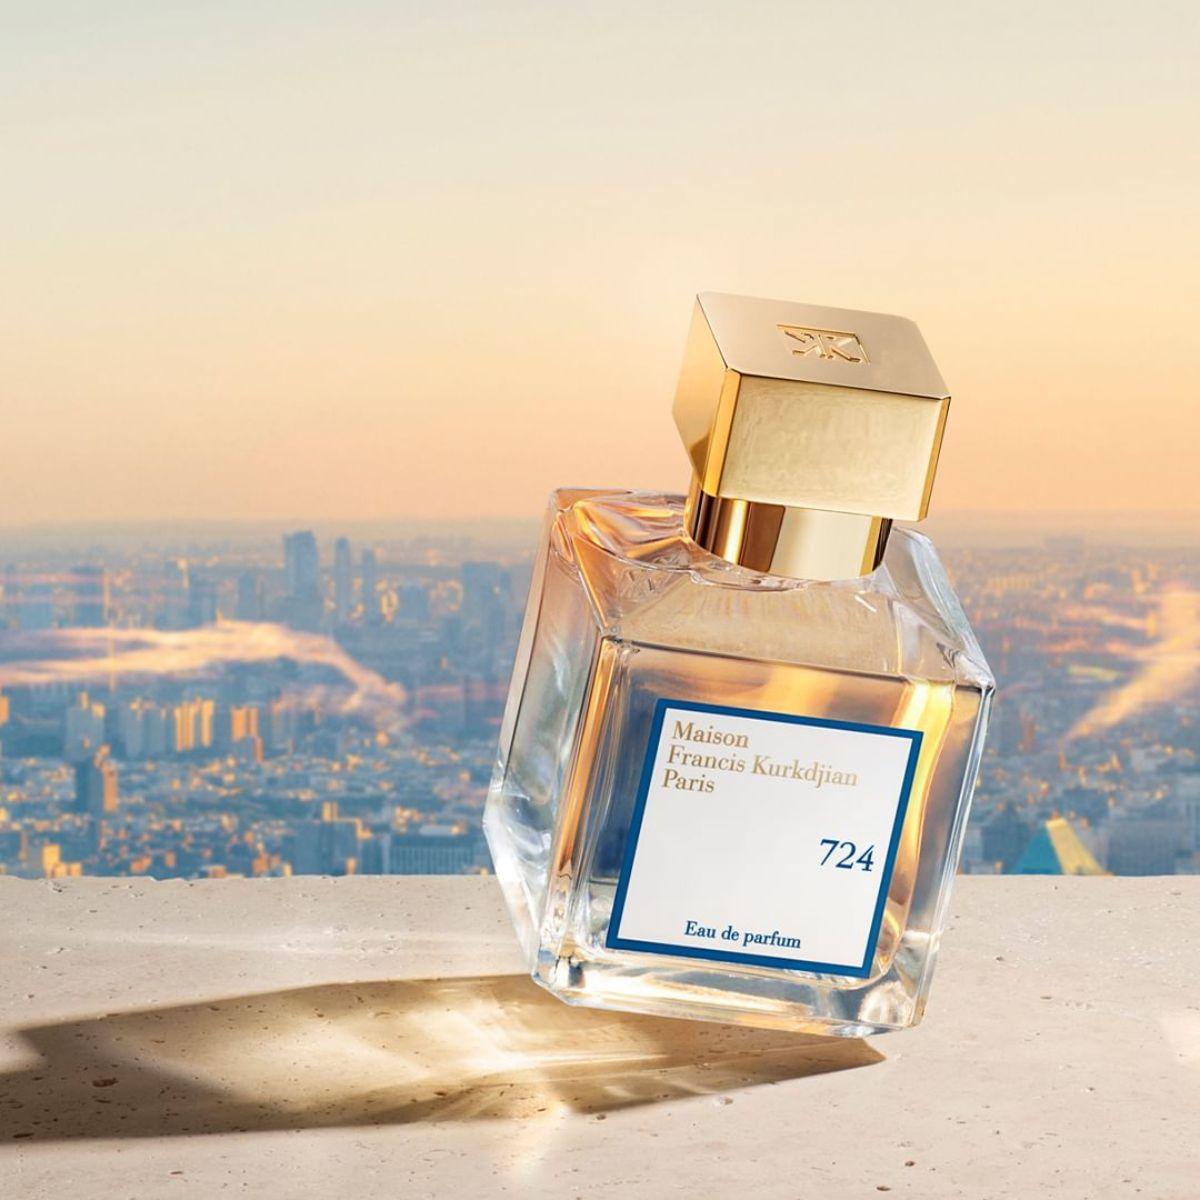 Afbeelding van het parfum 724 eau de parfum 70 ml van het merk Maison Francis Kurkdjian